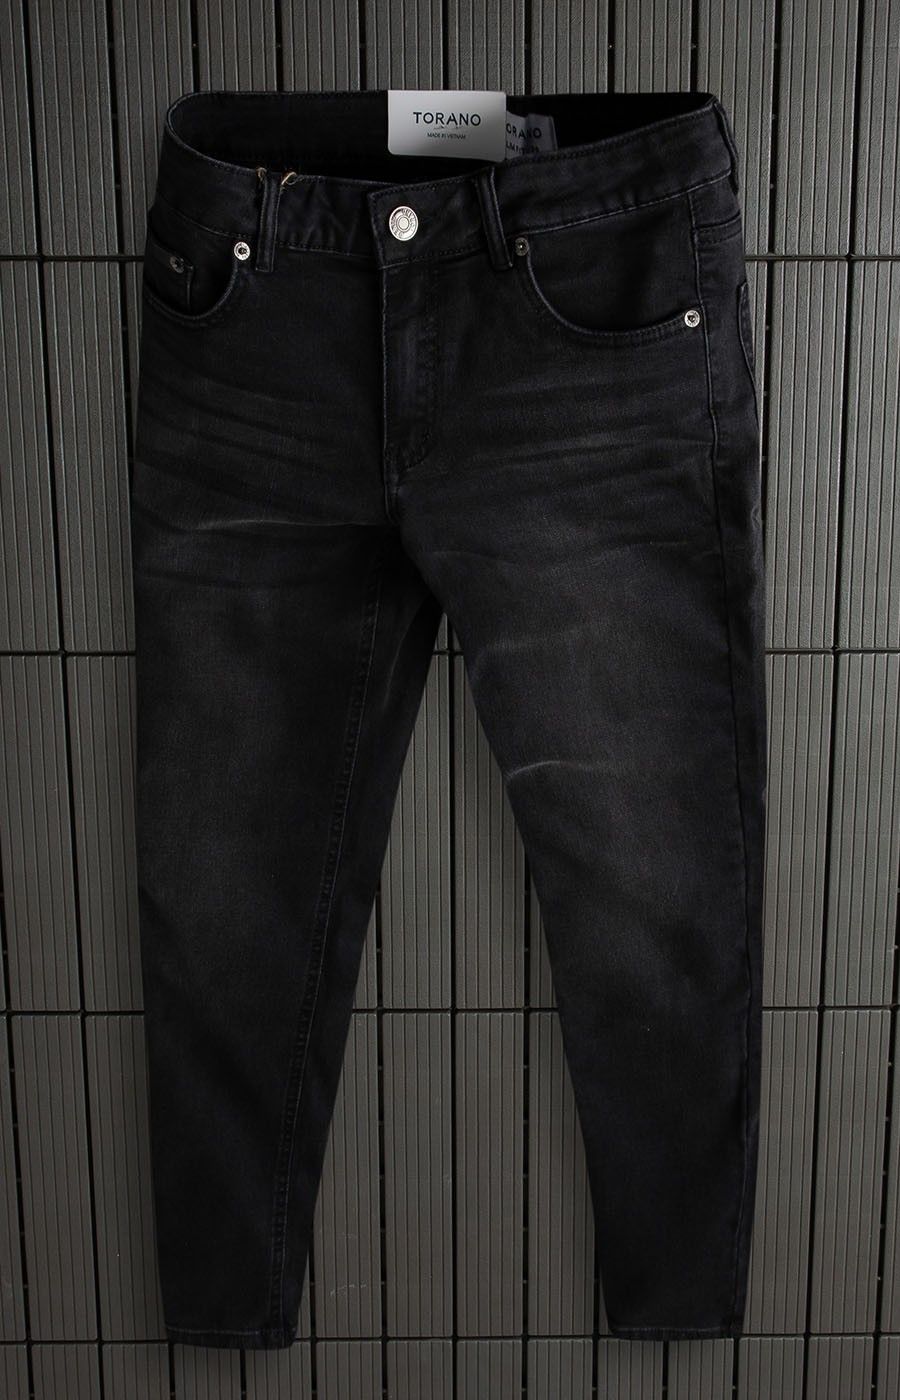  Quần Jeans basic slim EABJ012 